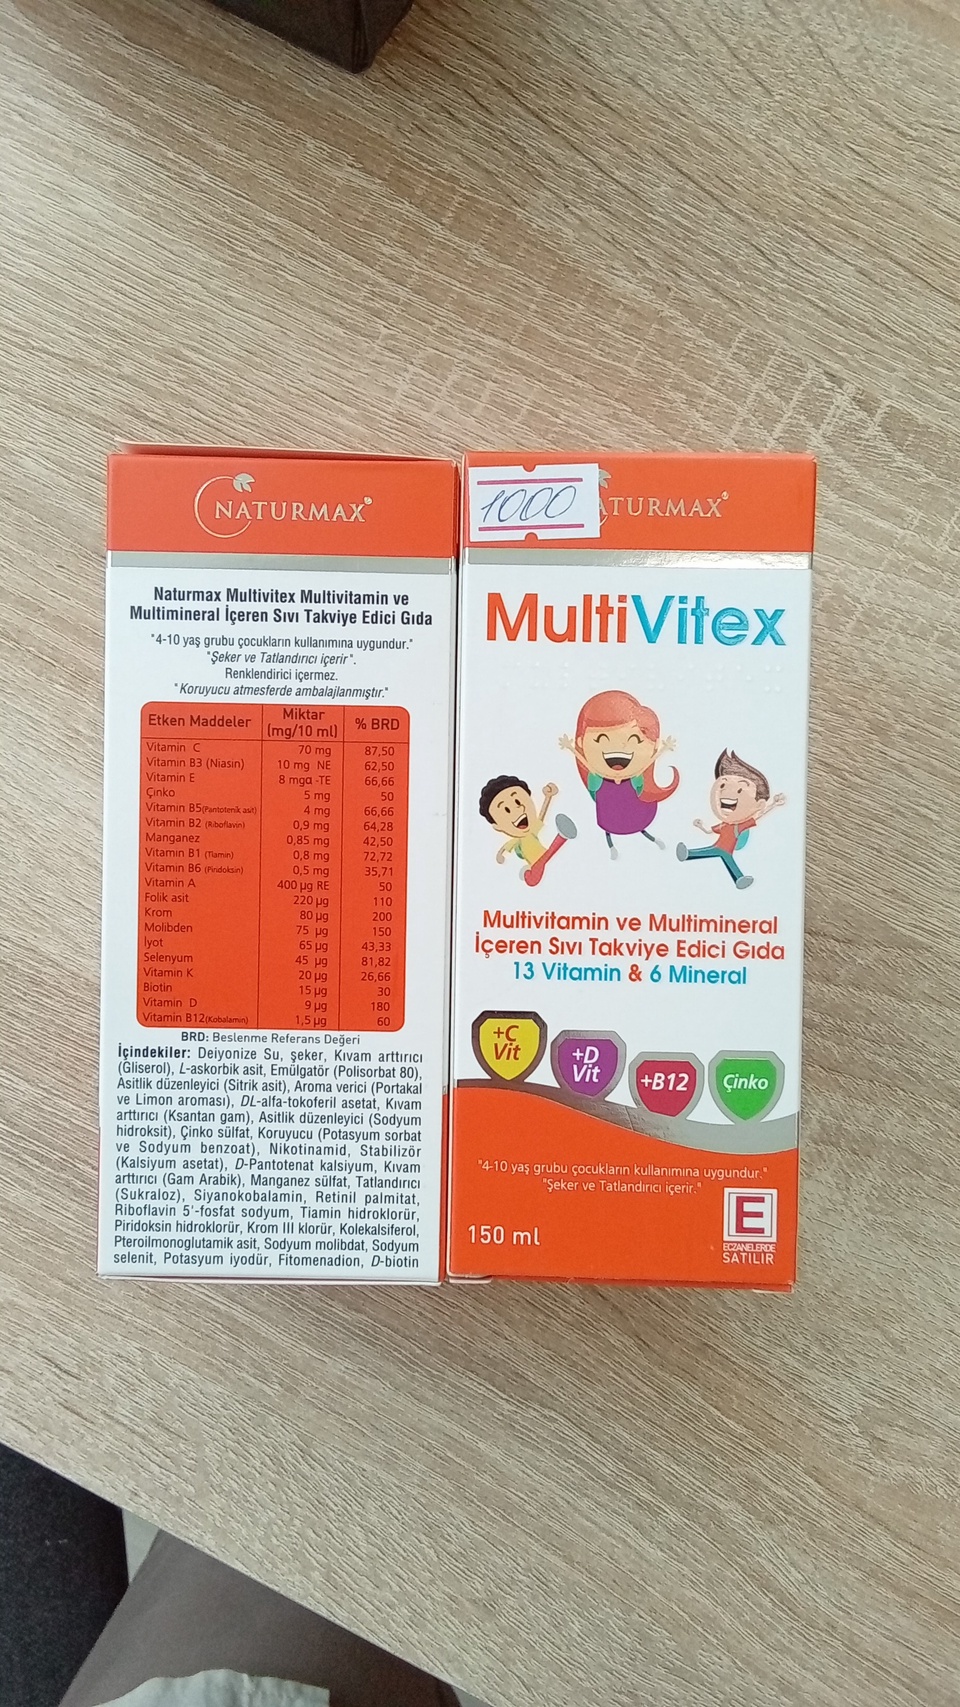 Мультивитамины в сиропе для детей - 1 000 ₽, заказать онлайн.